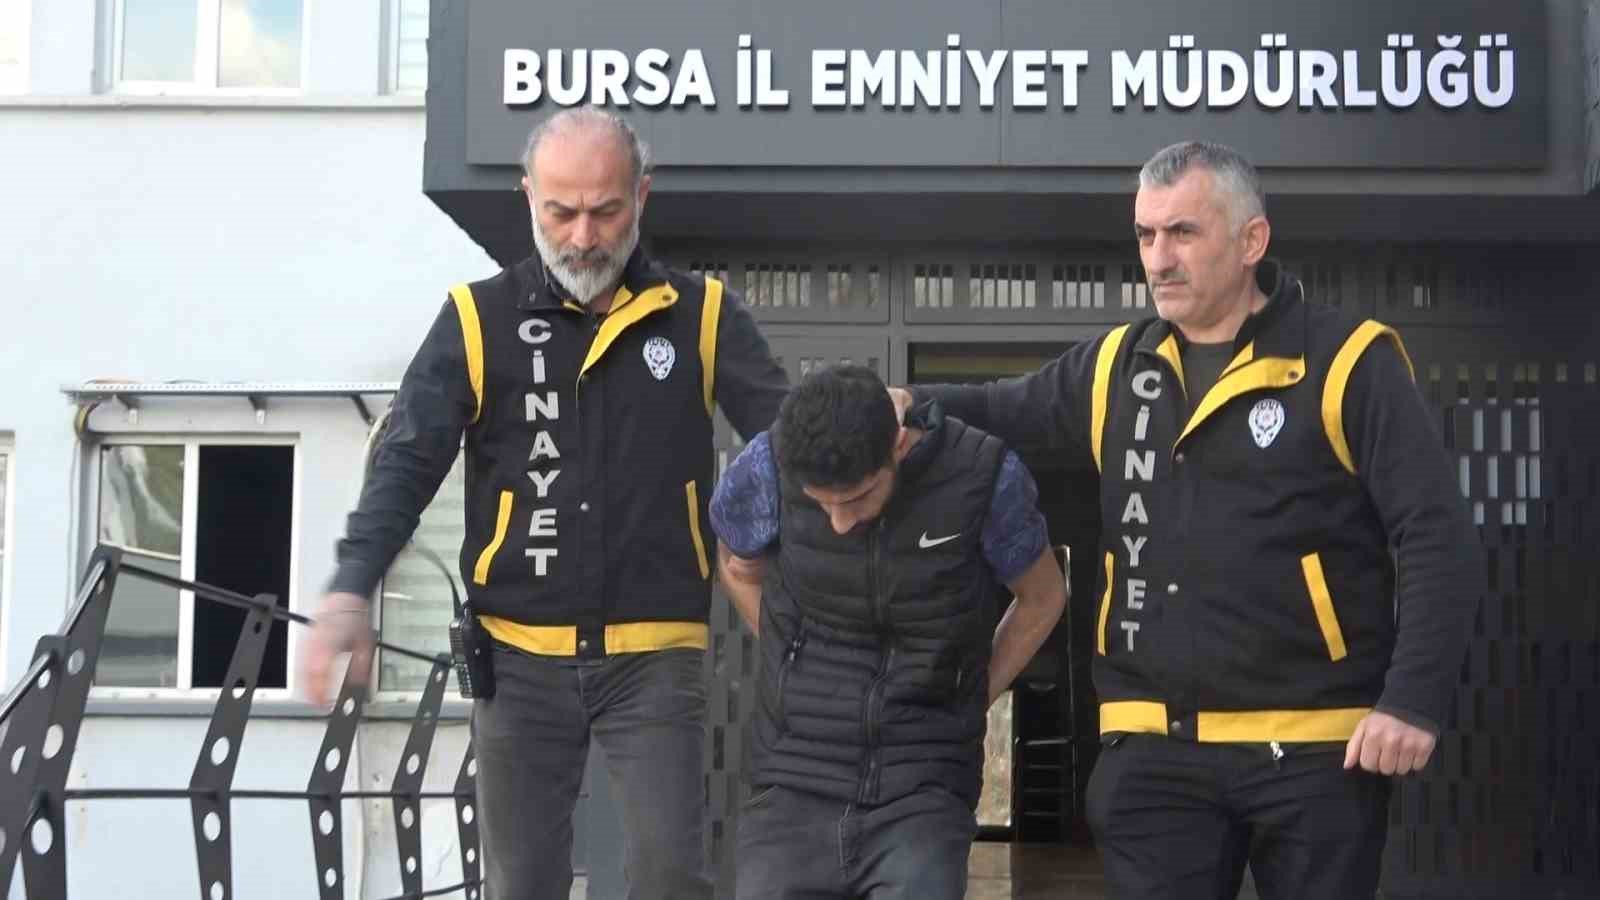 Bursa’daki vahşi cinayette yeni gelişme!